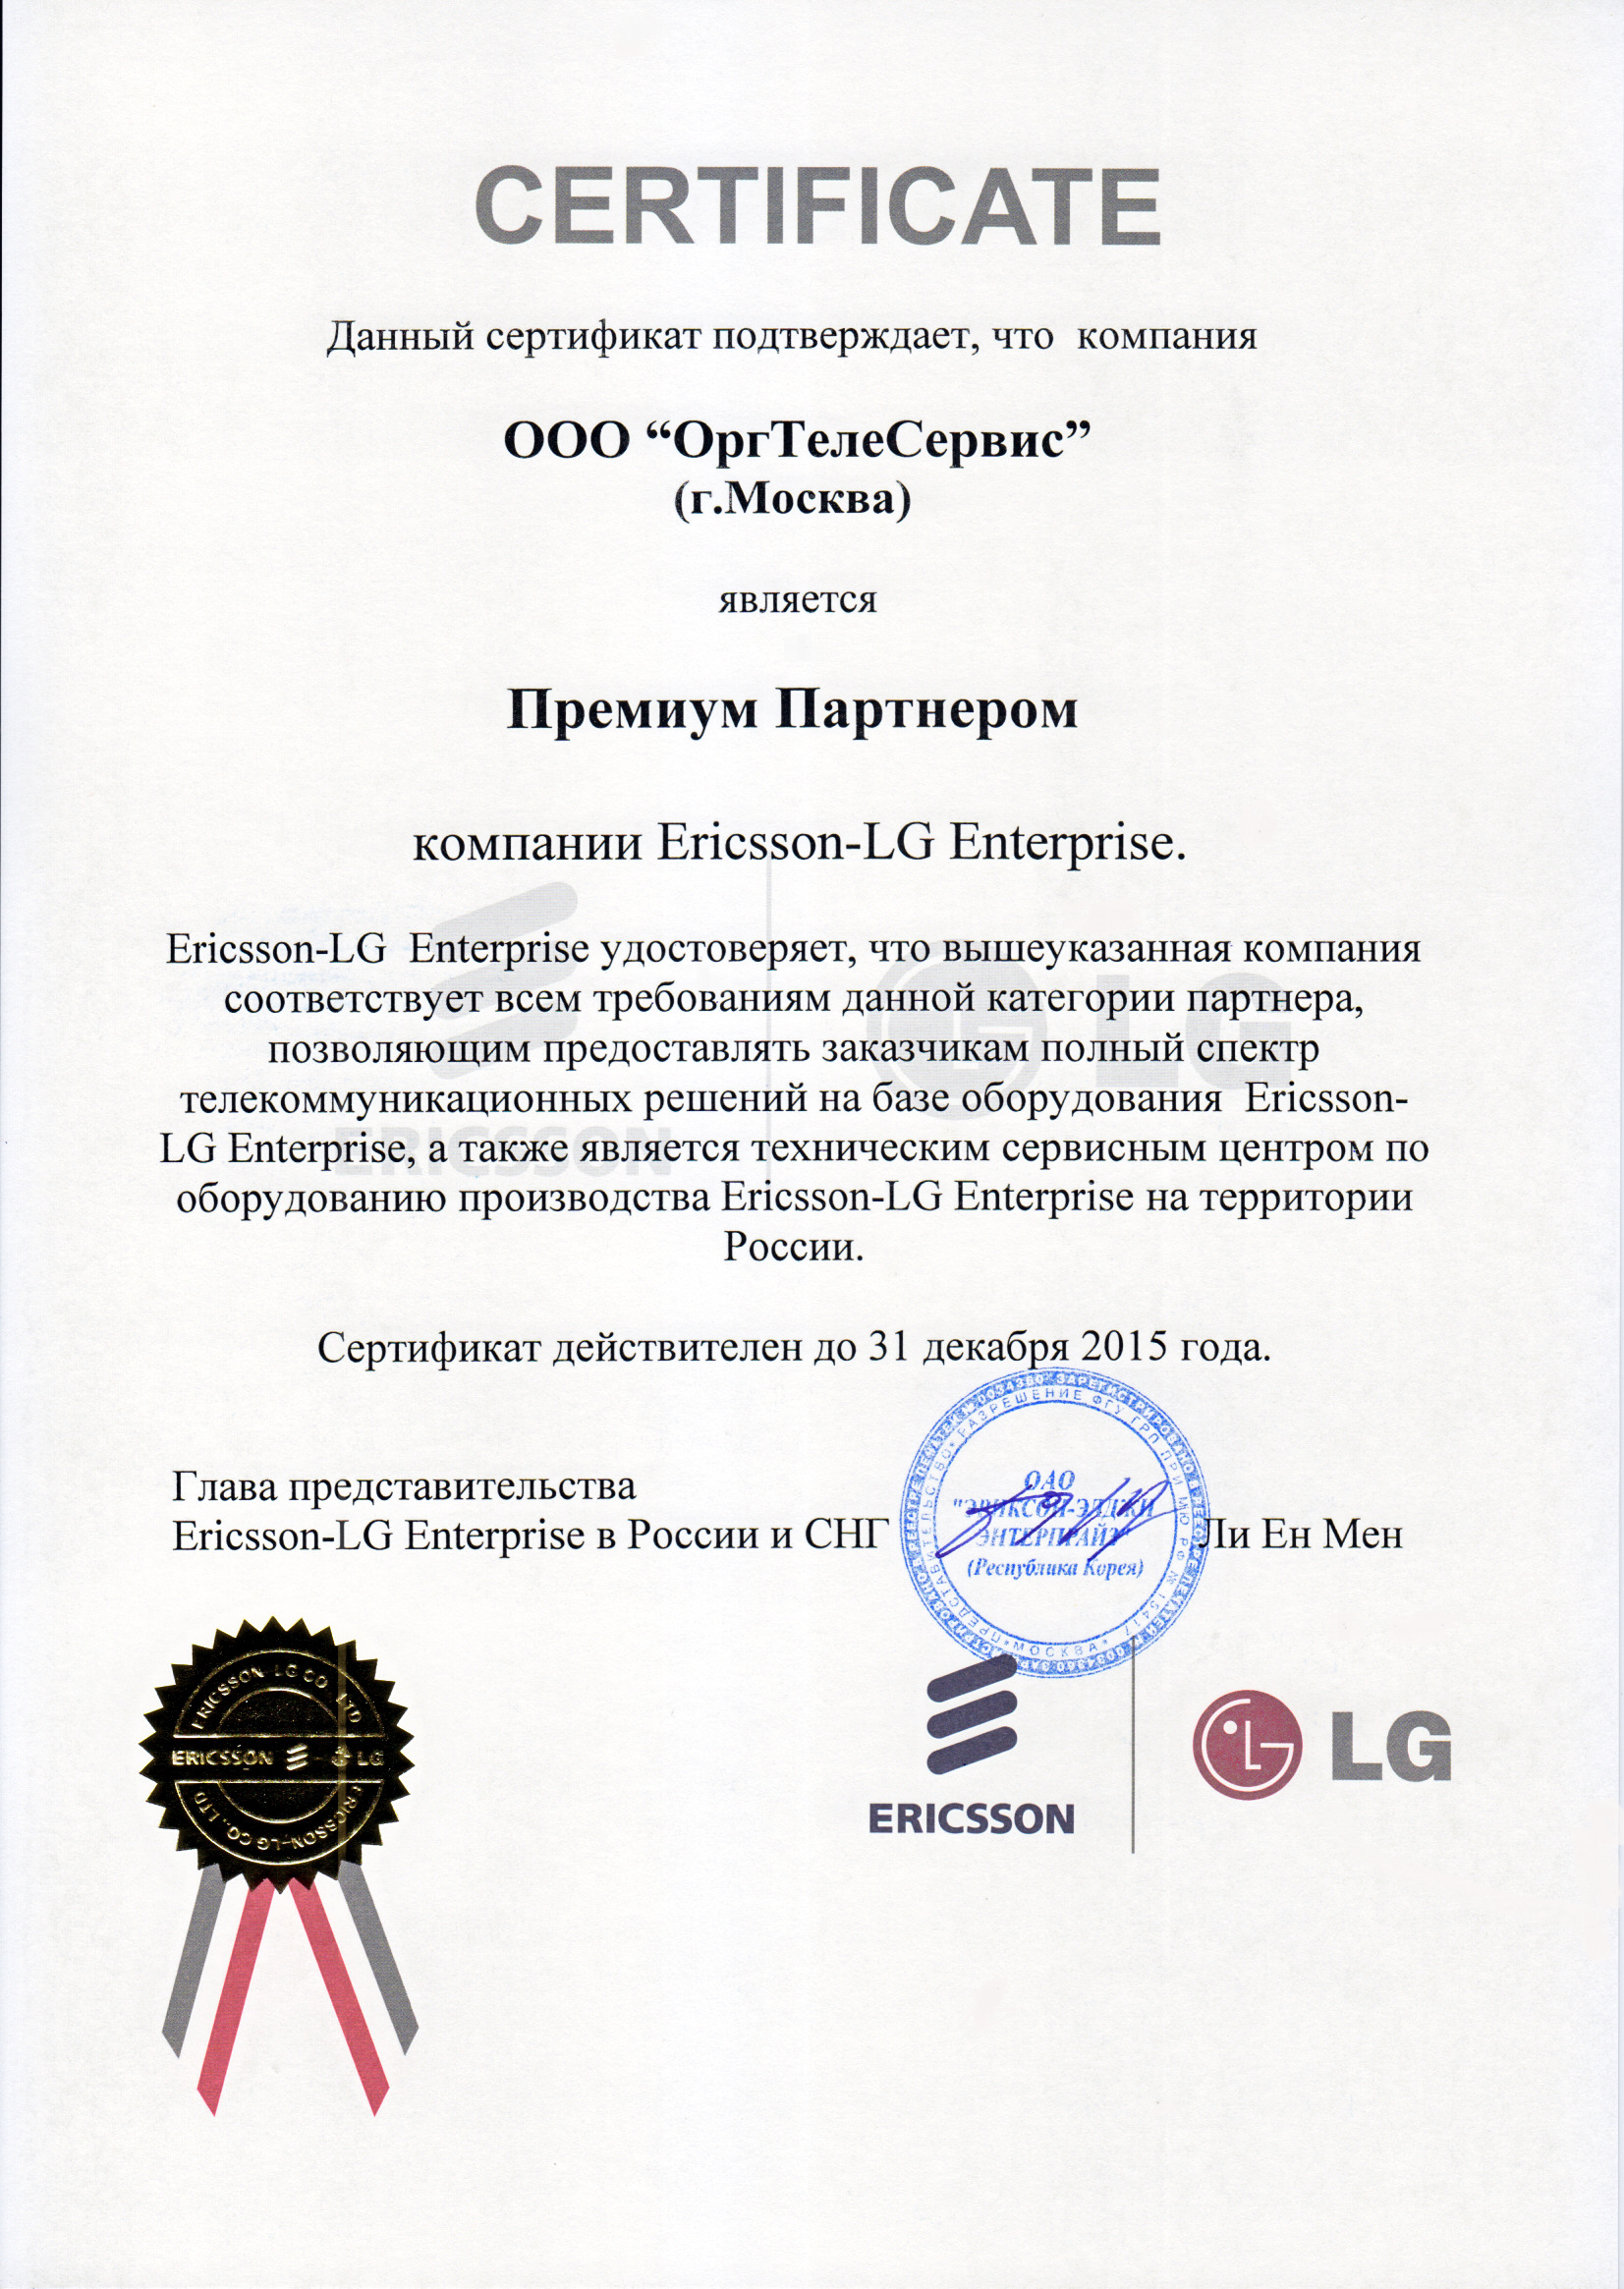 Сертификат Ericsson-LG